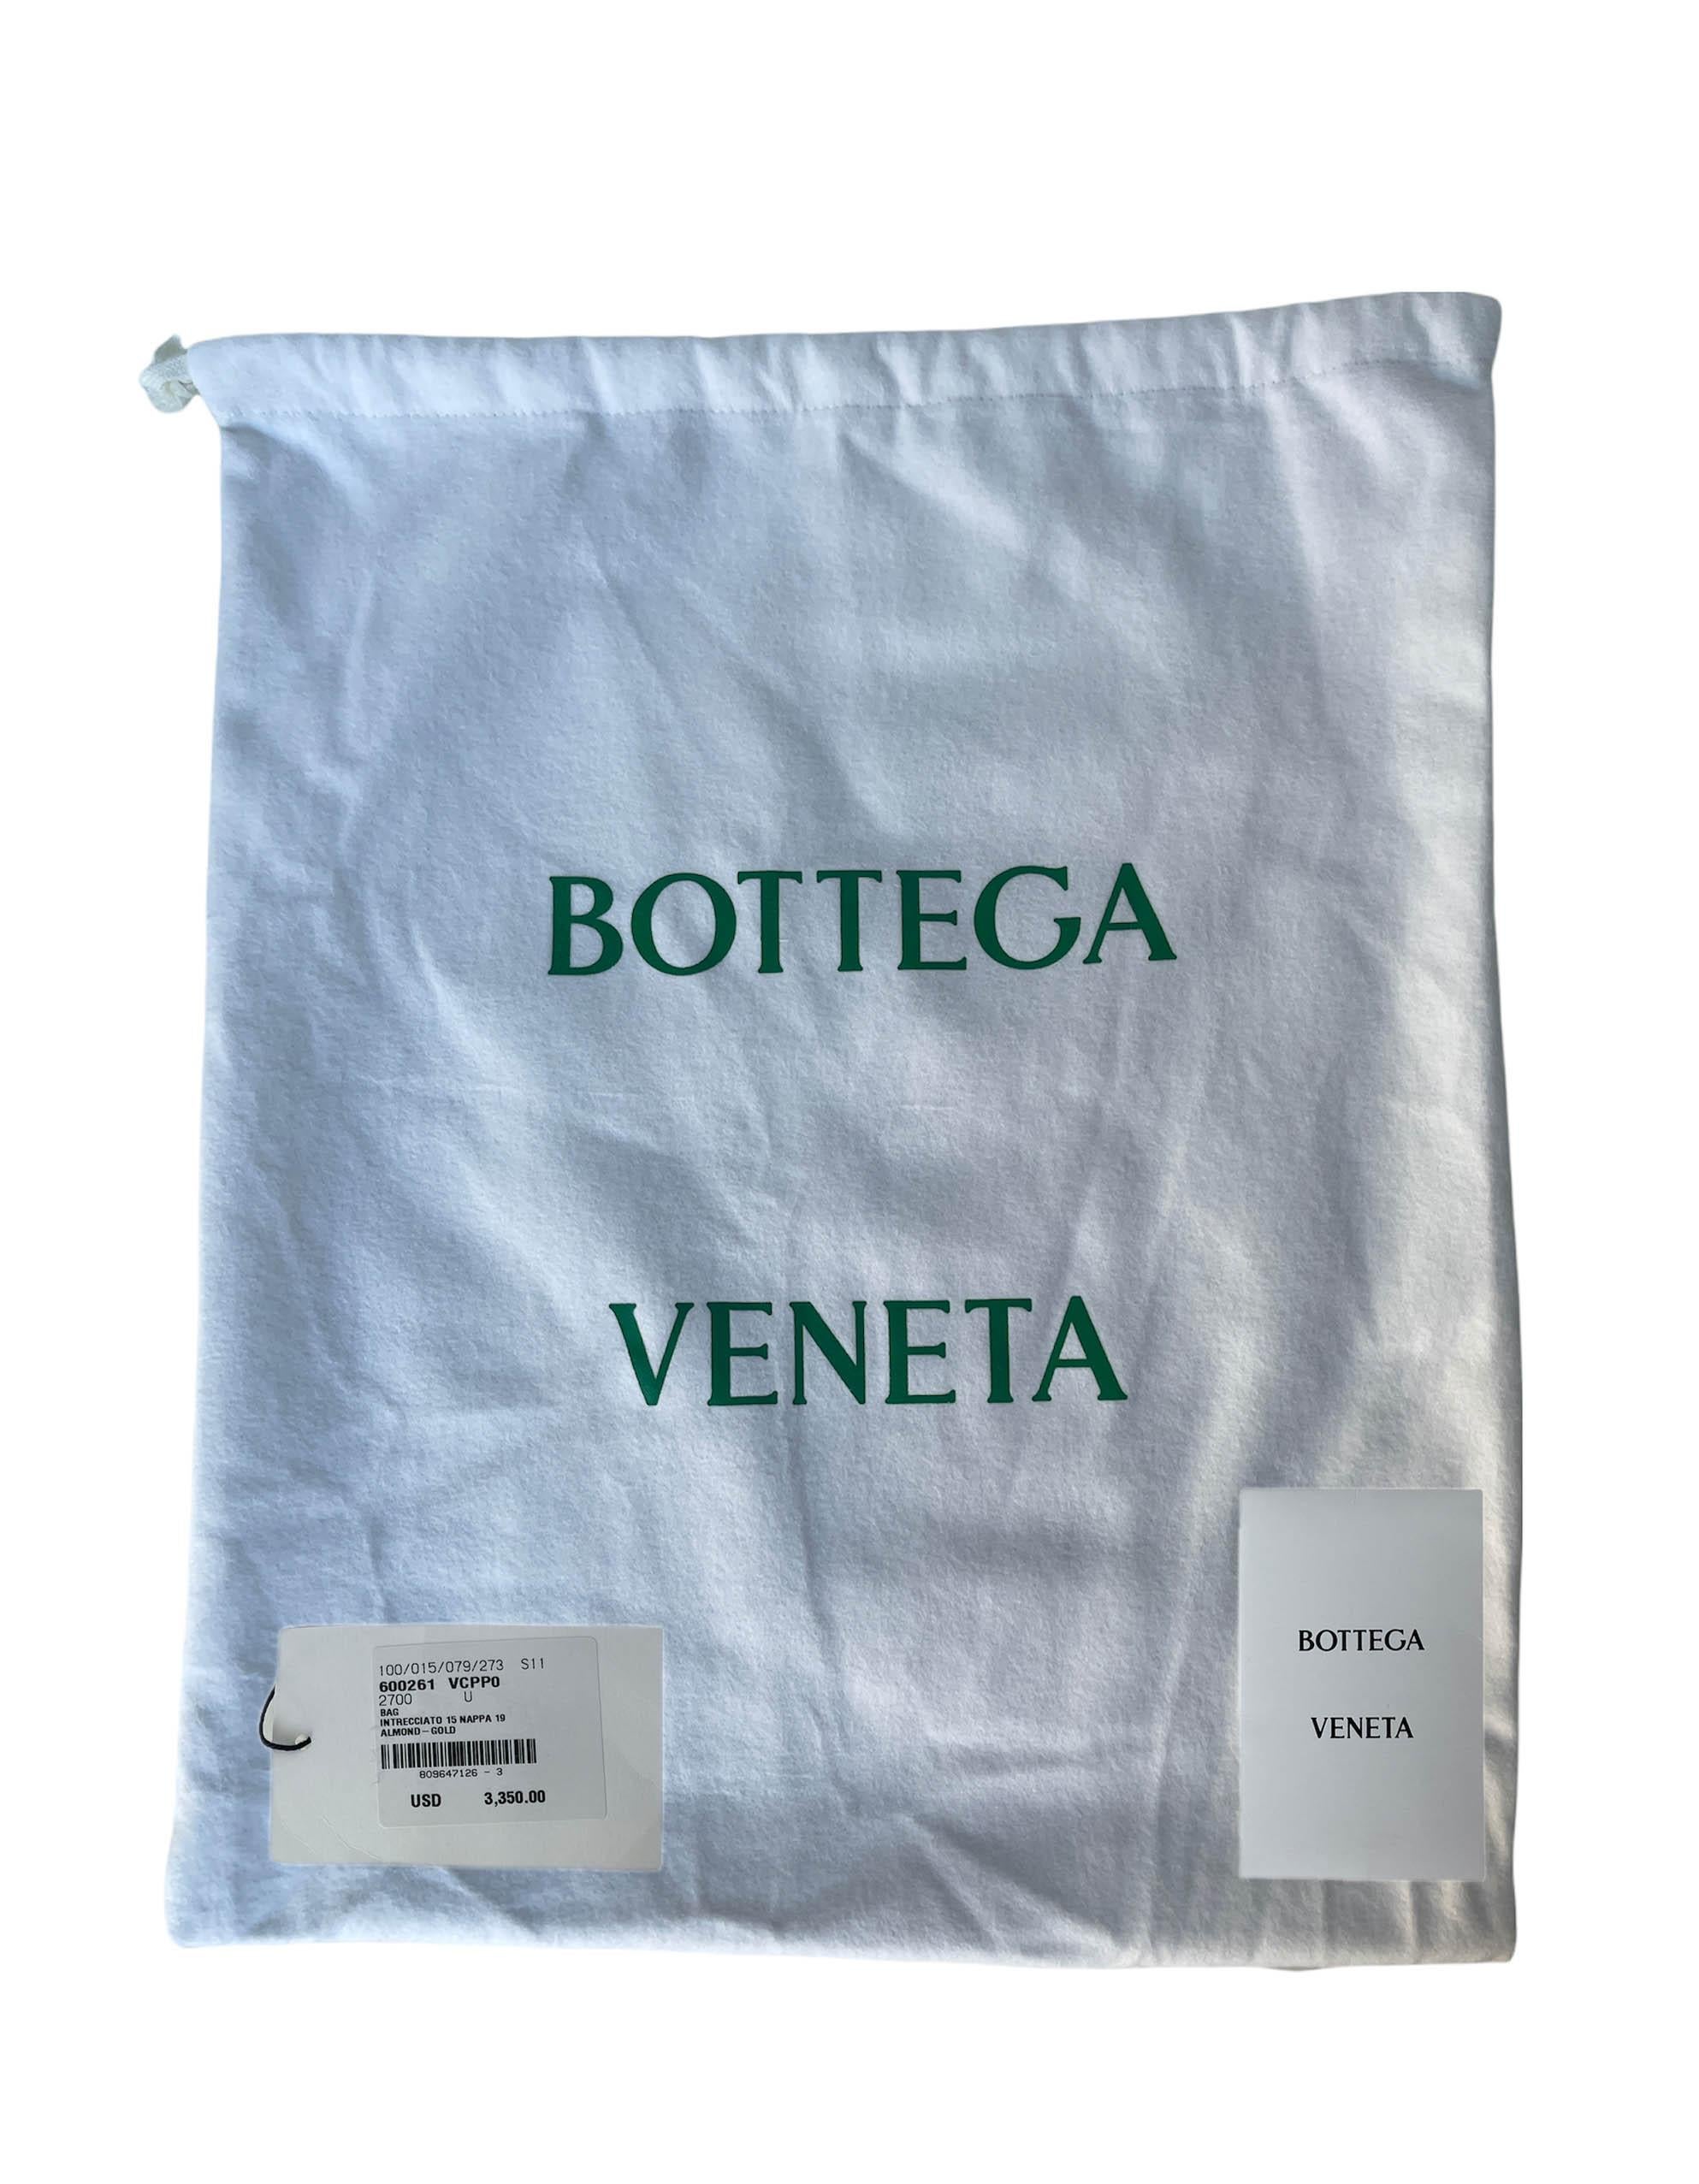 Bottega Veneta BV NEW Almond Beige Intrecciato Leather Medium Jodie Hobo Bag 2